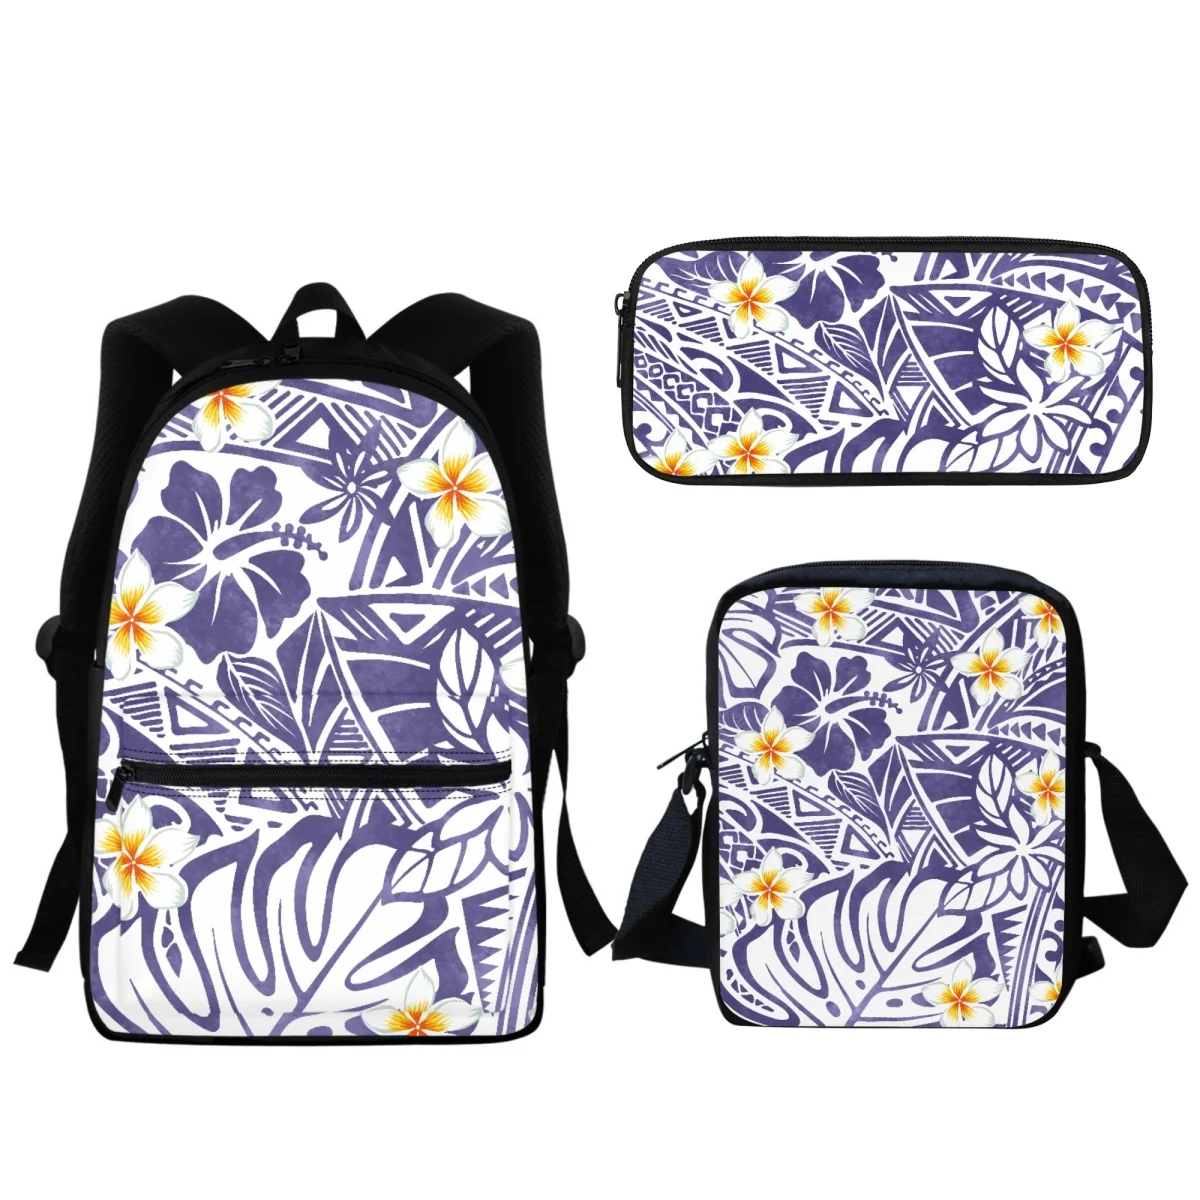 Новый школьный портфель для мальчиков и девочек в полинезийском стиле с принтом